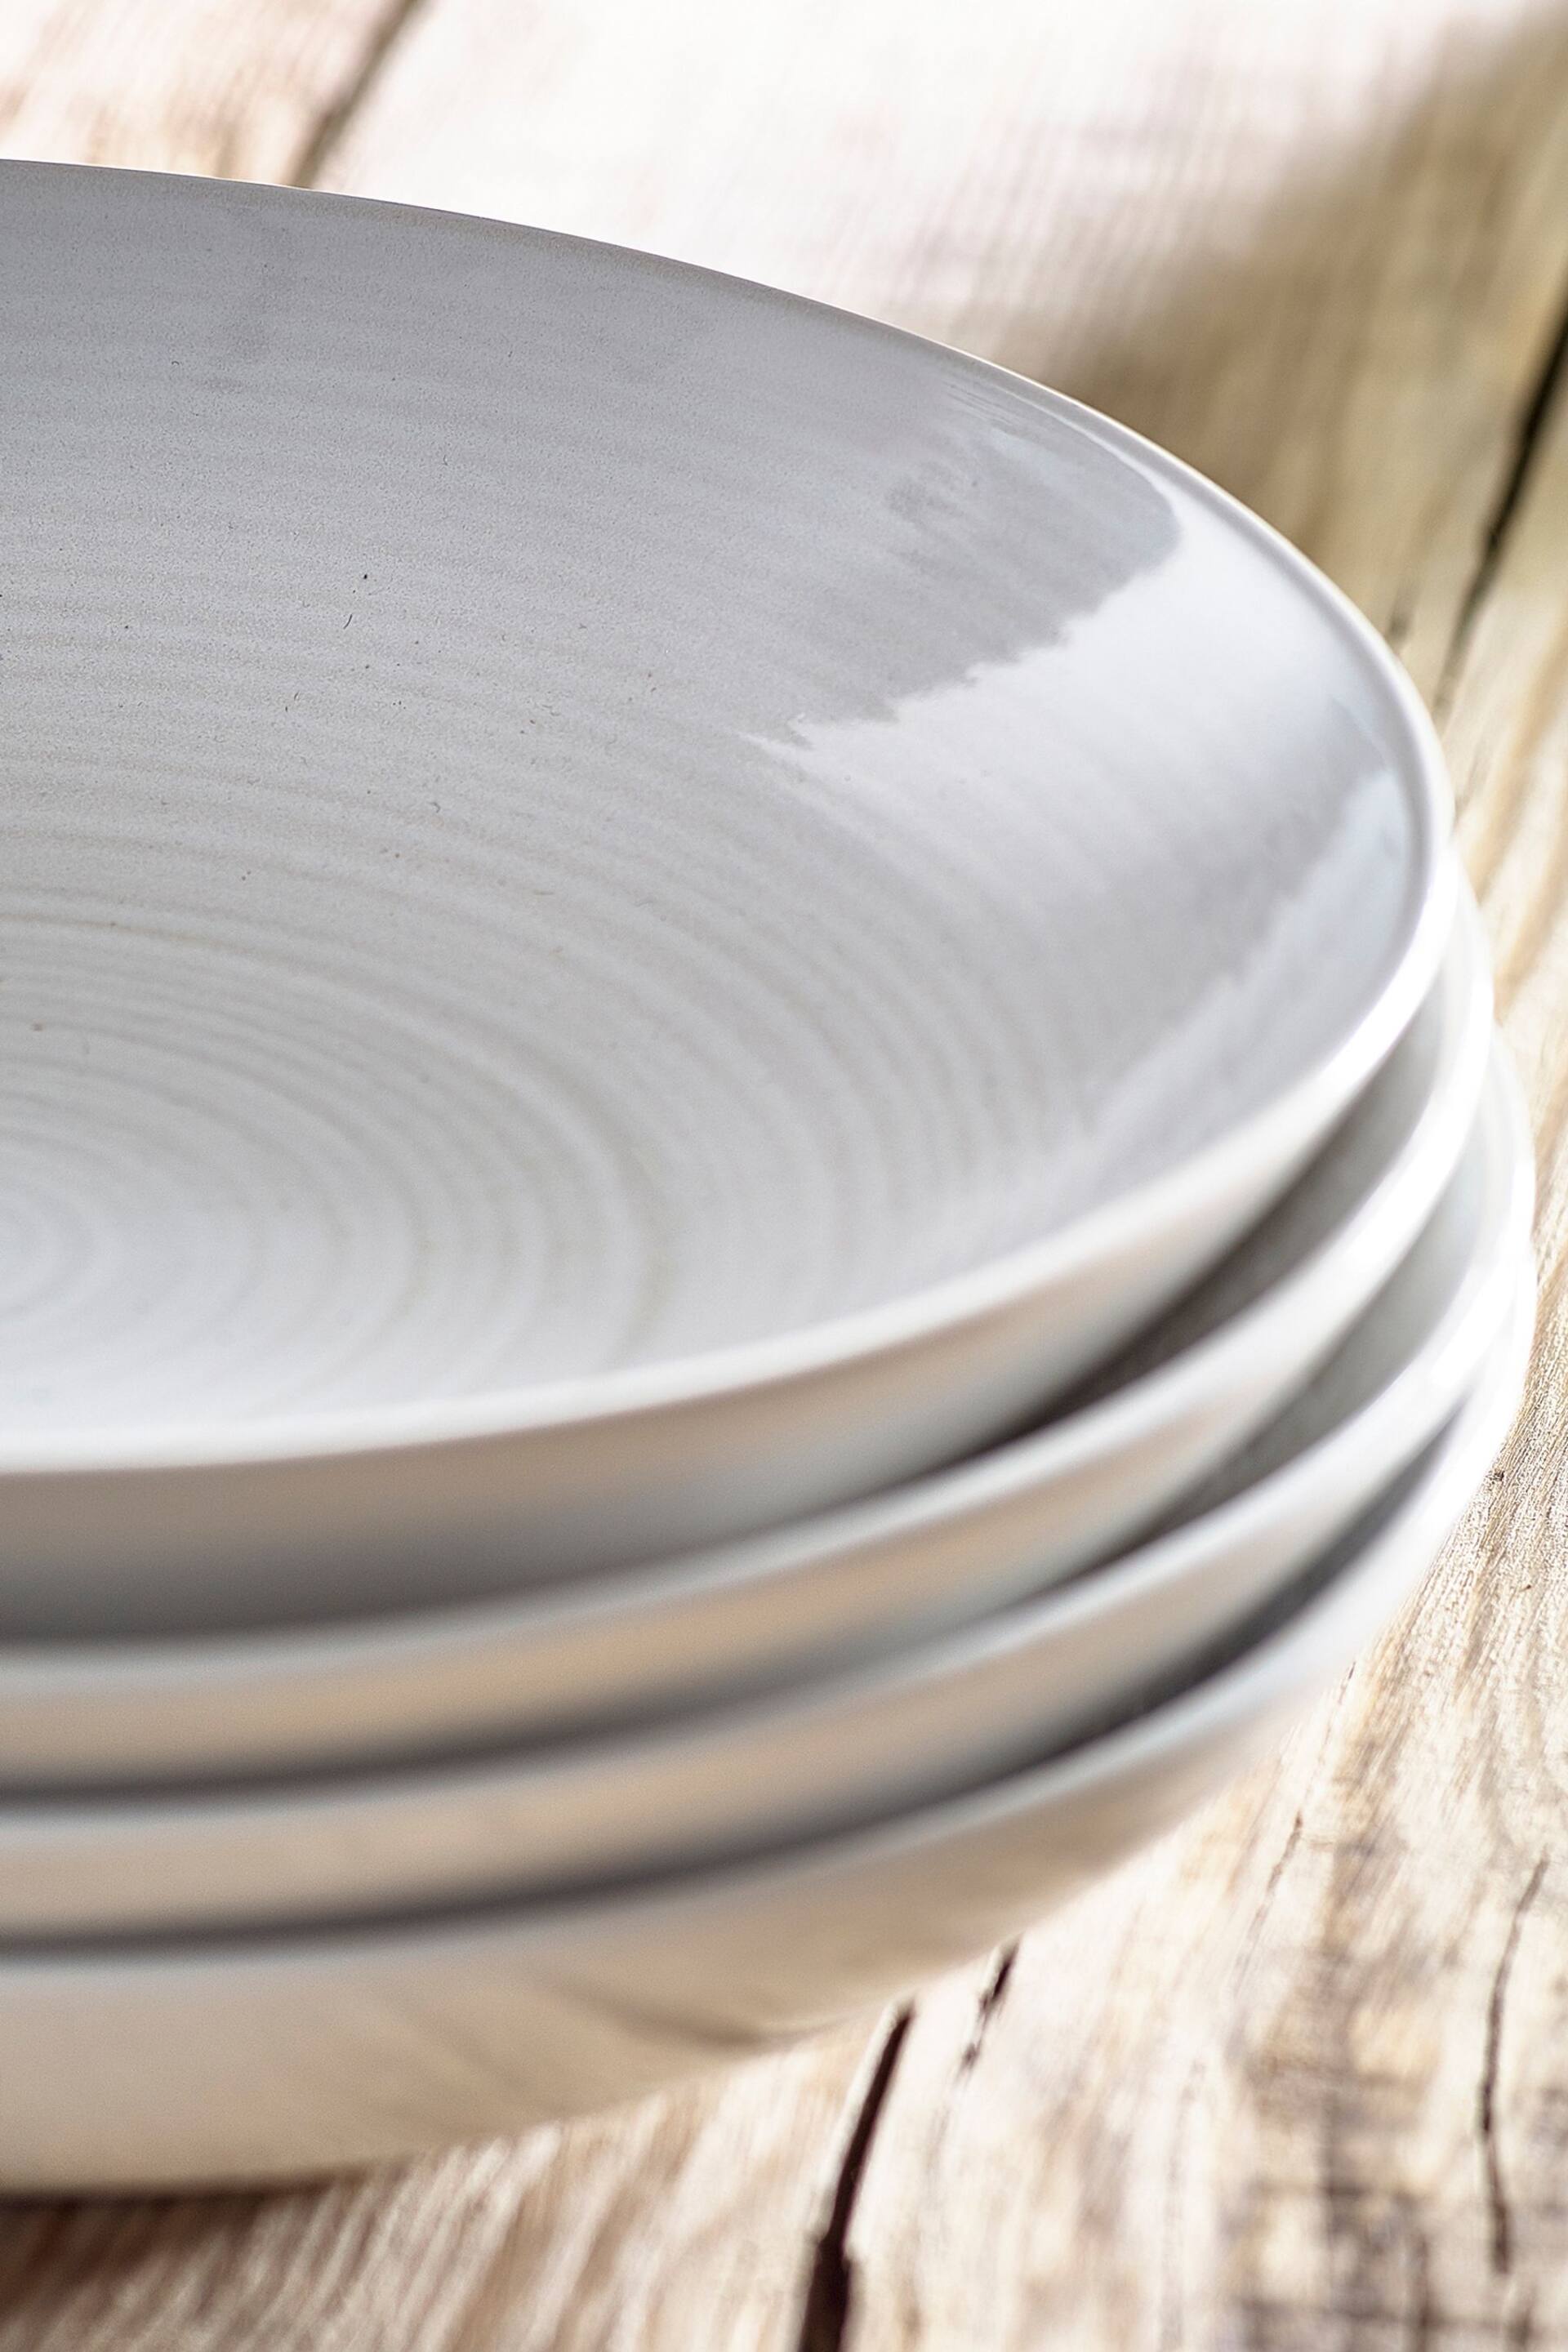 White Kya Dinnerware Set of 4 Pasta Bowls - Image 3 of 4